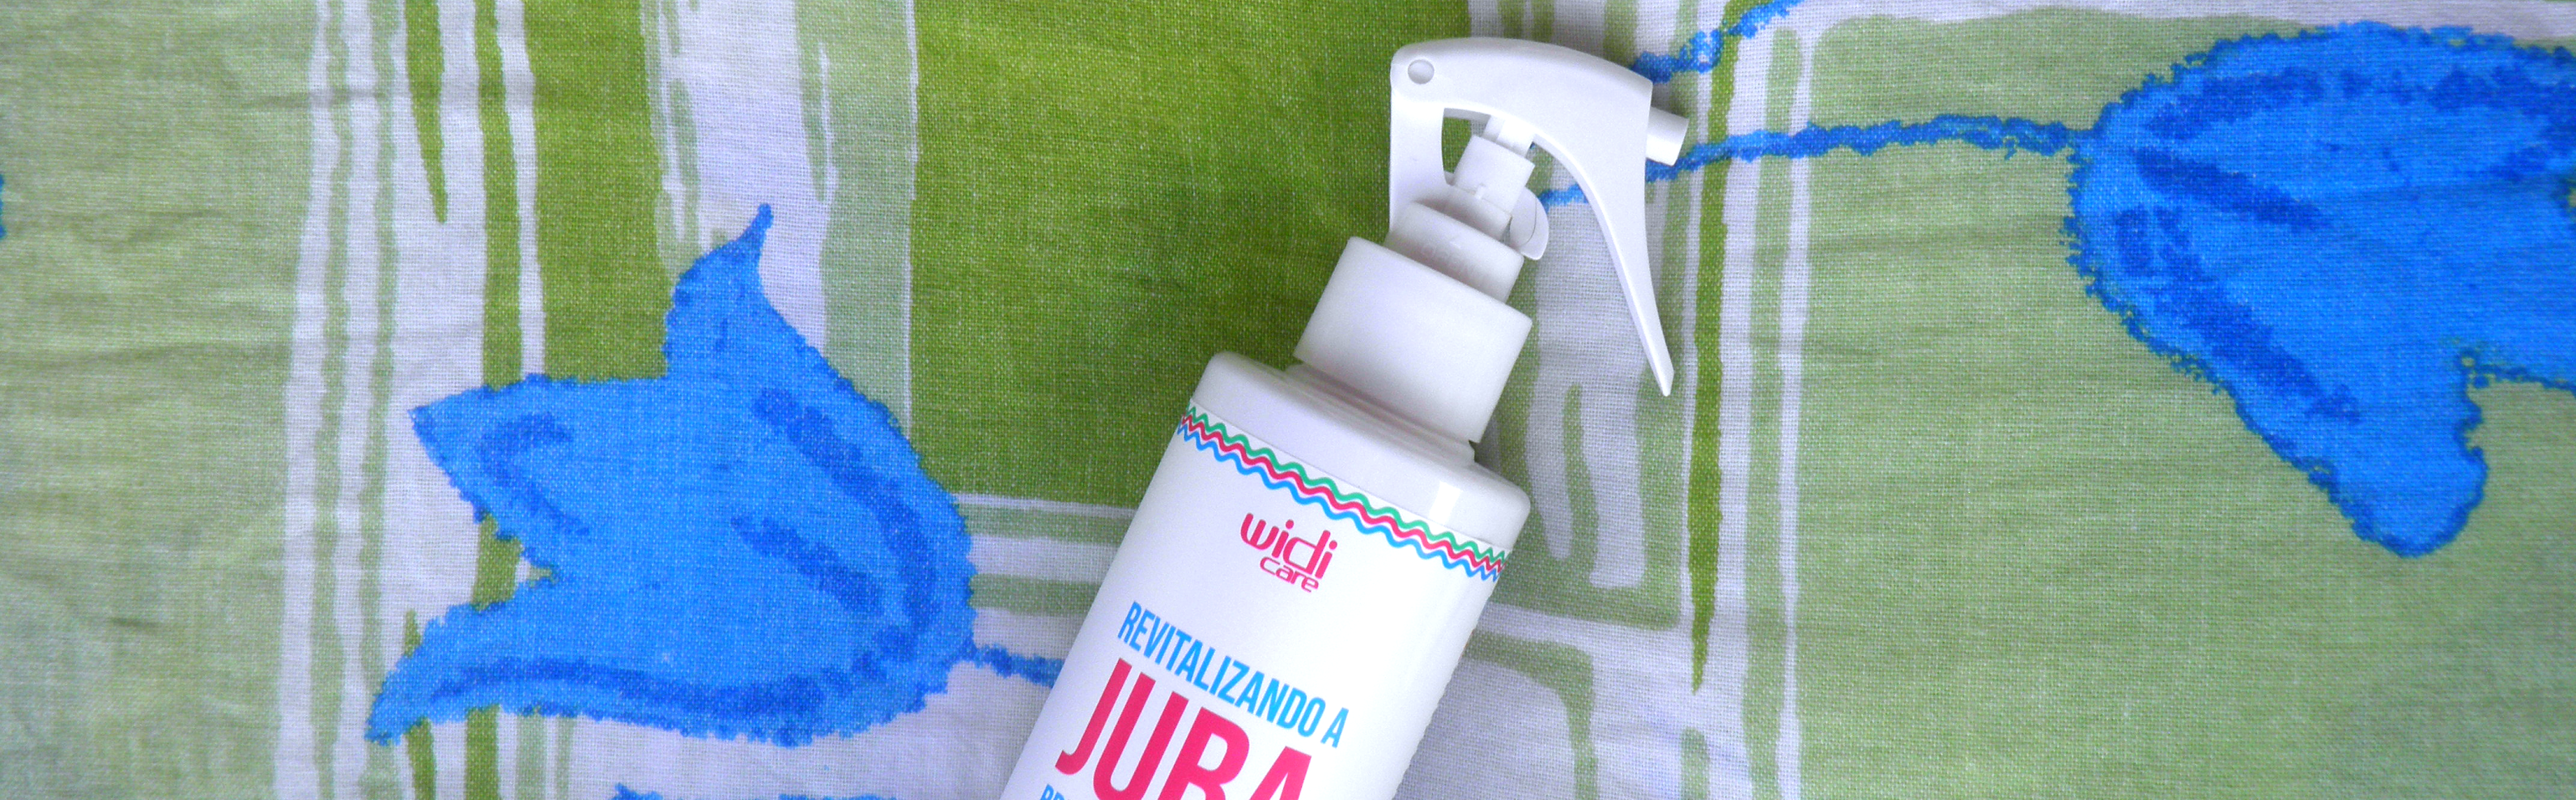 Revitalizando a Juba - Spray para day after vegano, liberado para Low Poo e No Poo